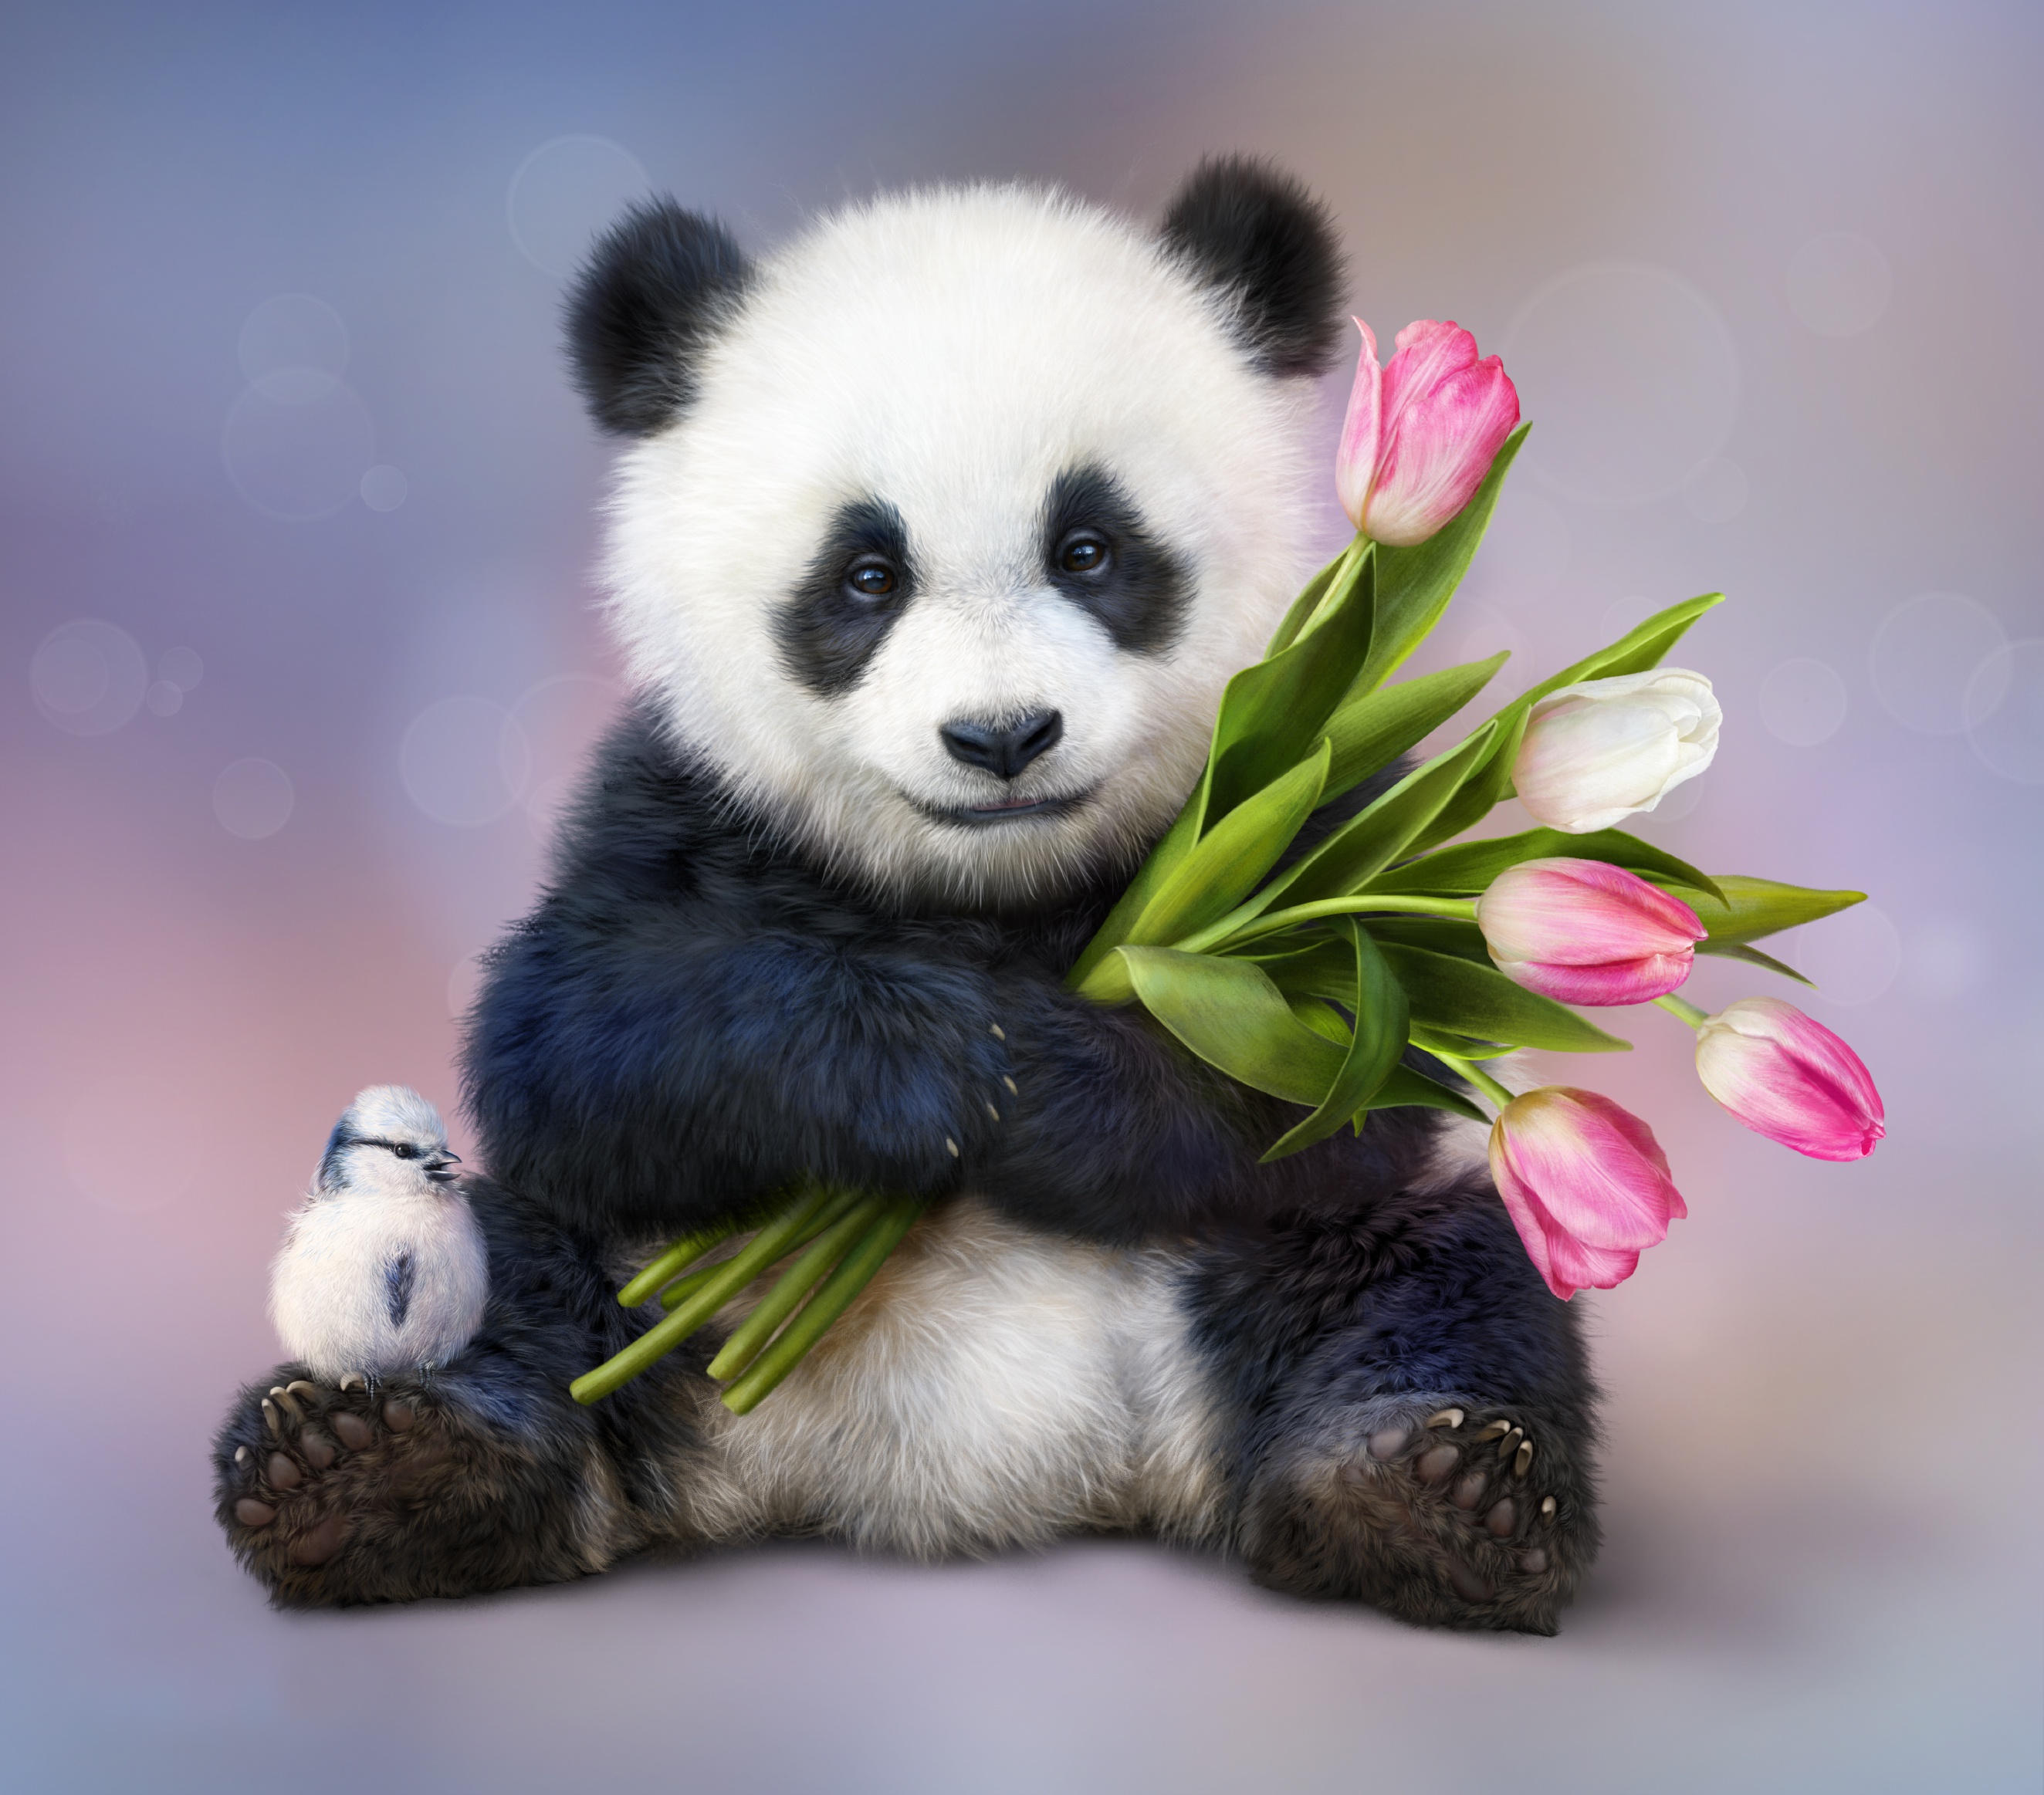 Free download wallpaper Animal, Panda, Baby Animal on your PC desktop